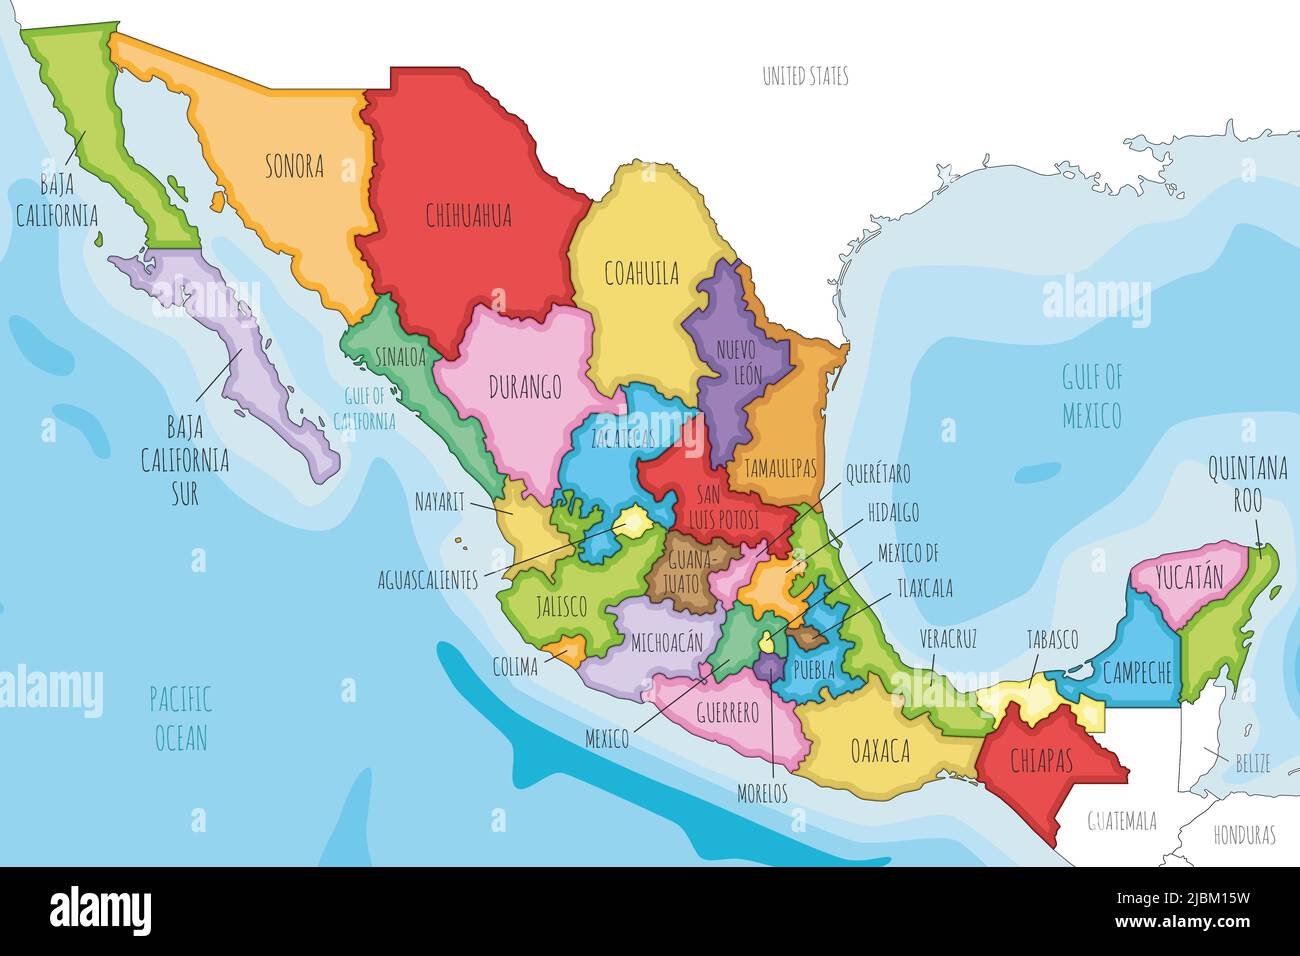 Mappa vettoriale illustrata del Messico con regioni o stati e divisioni amministrative, e paesi vicini. Livelli modificabili e chiaramente etichettati. Illustrazione Vettoriale